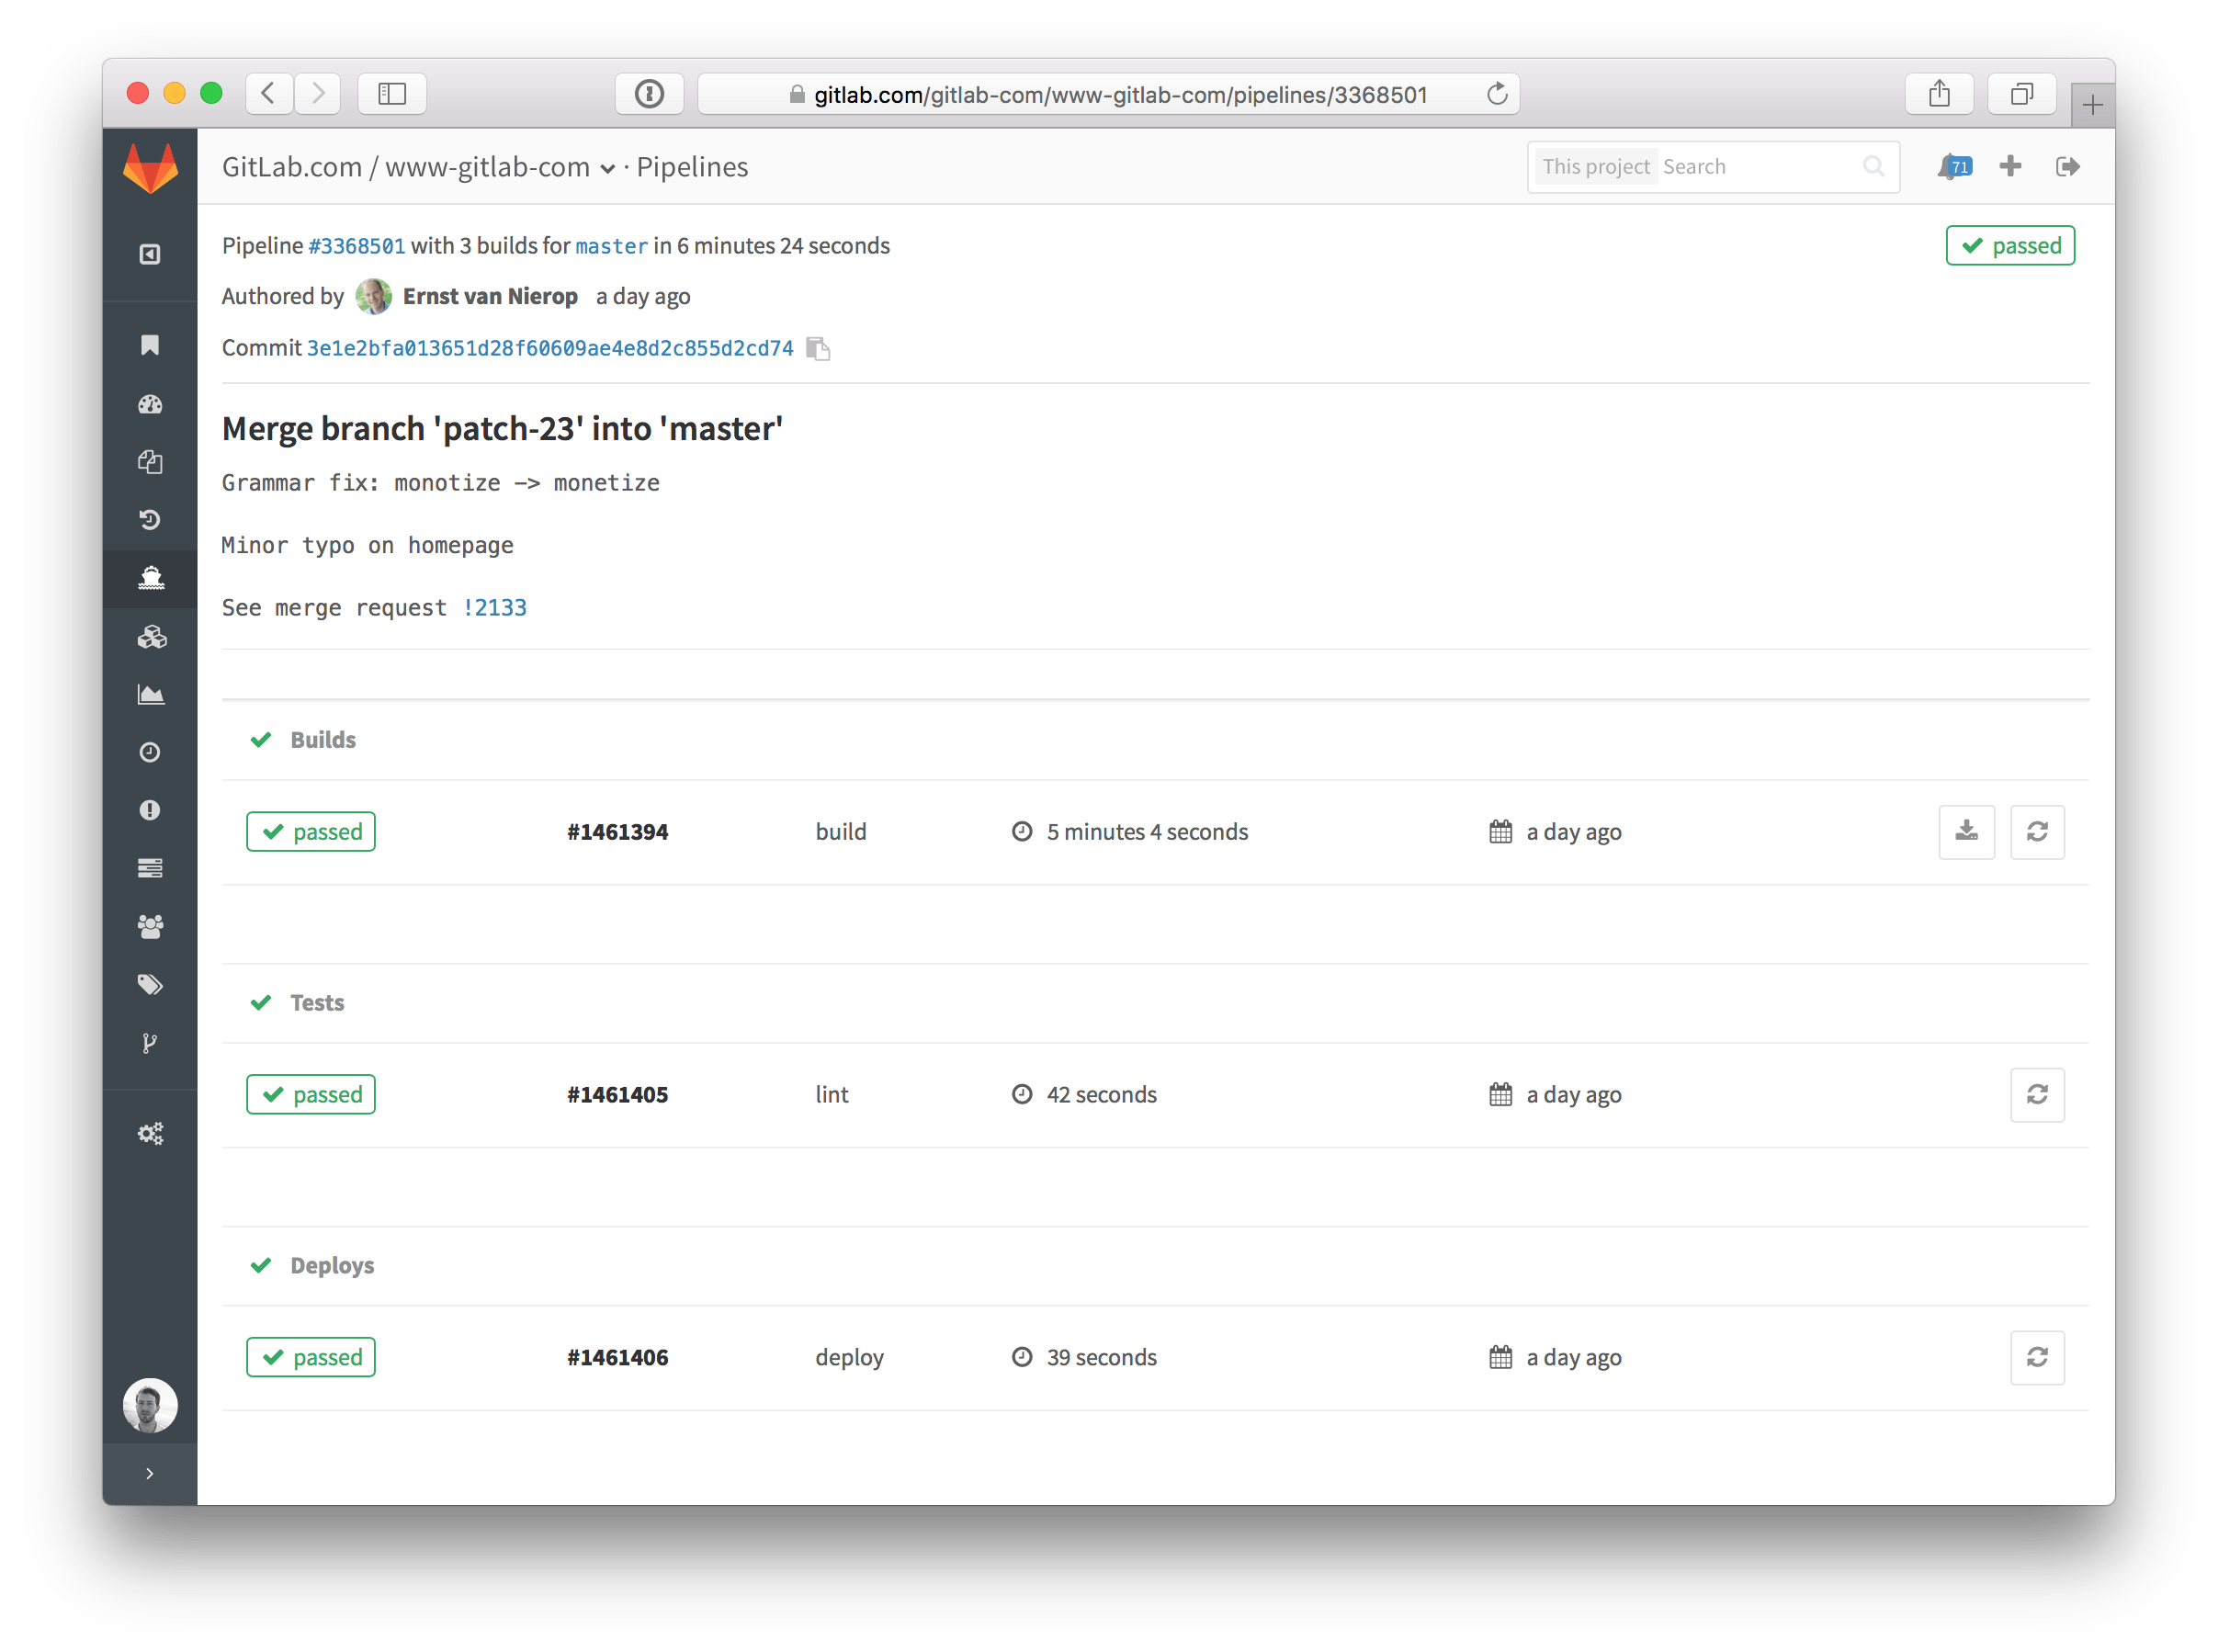 A single Pipeline in GitLab 8.8